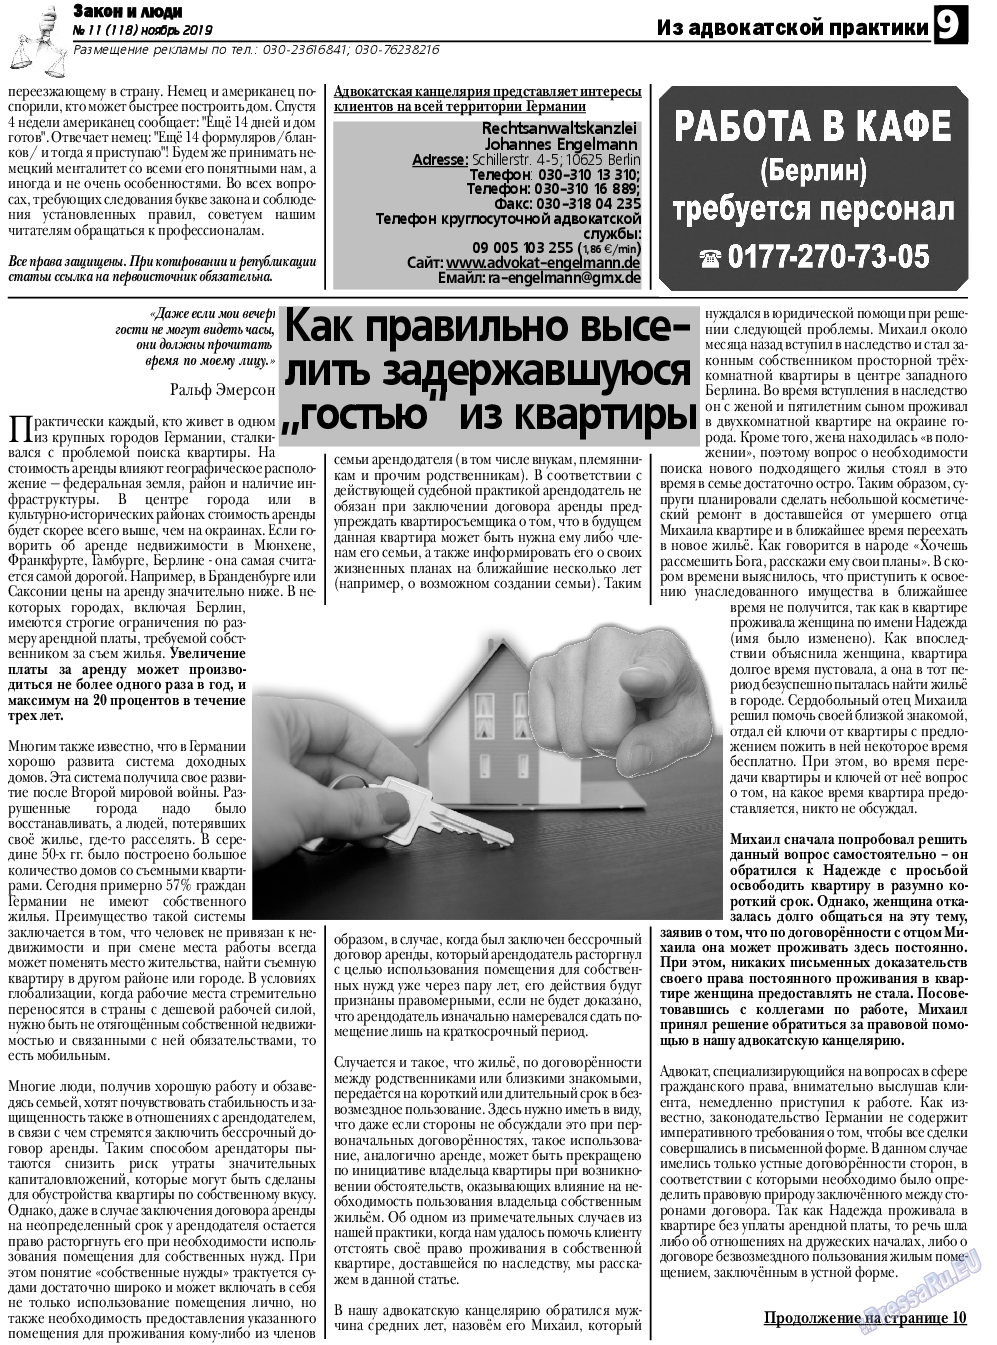 Закон и люди, газета. 2019 №11 стр.9